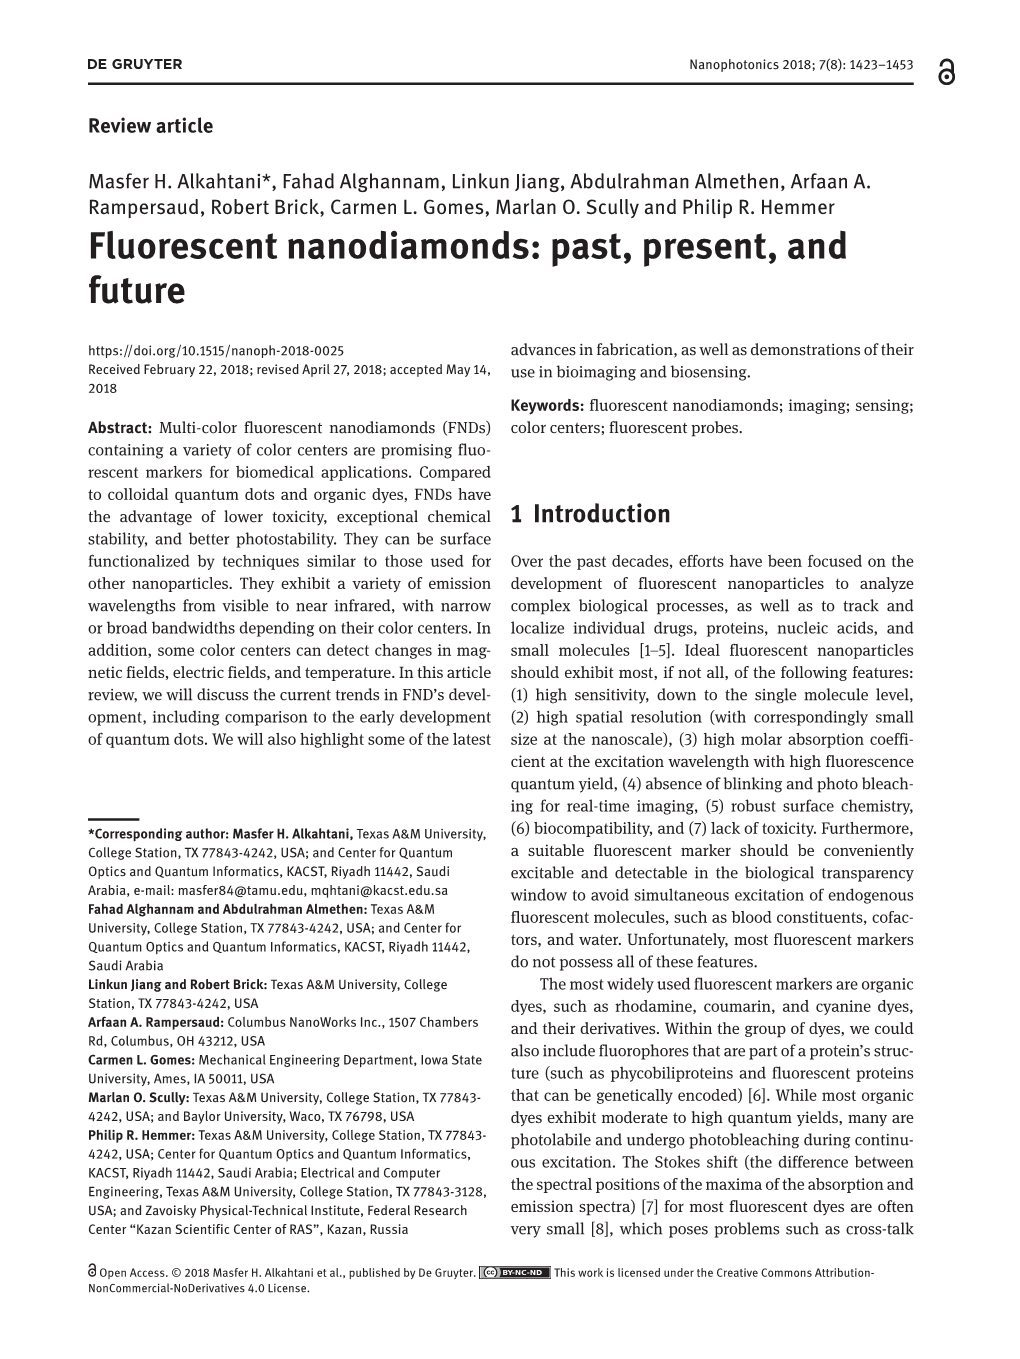 Fluorescent Nanodiamonds: Past, Present, and Future